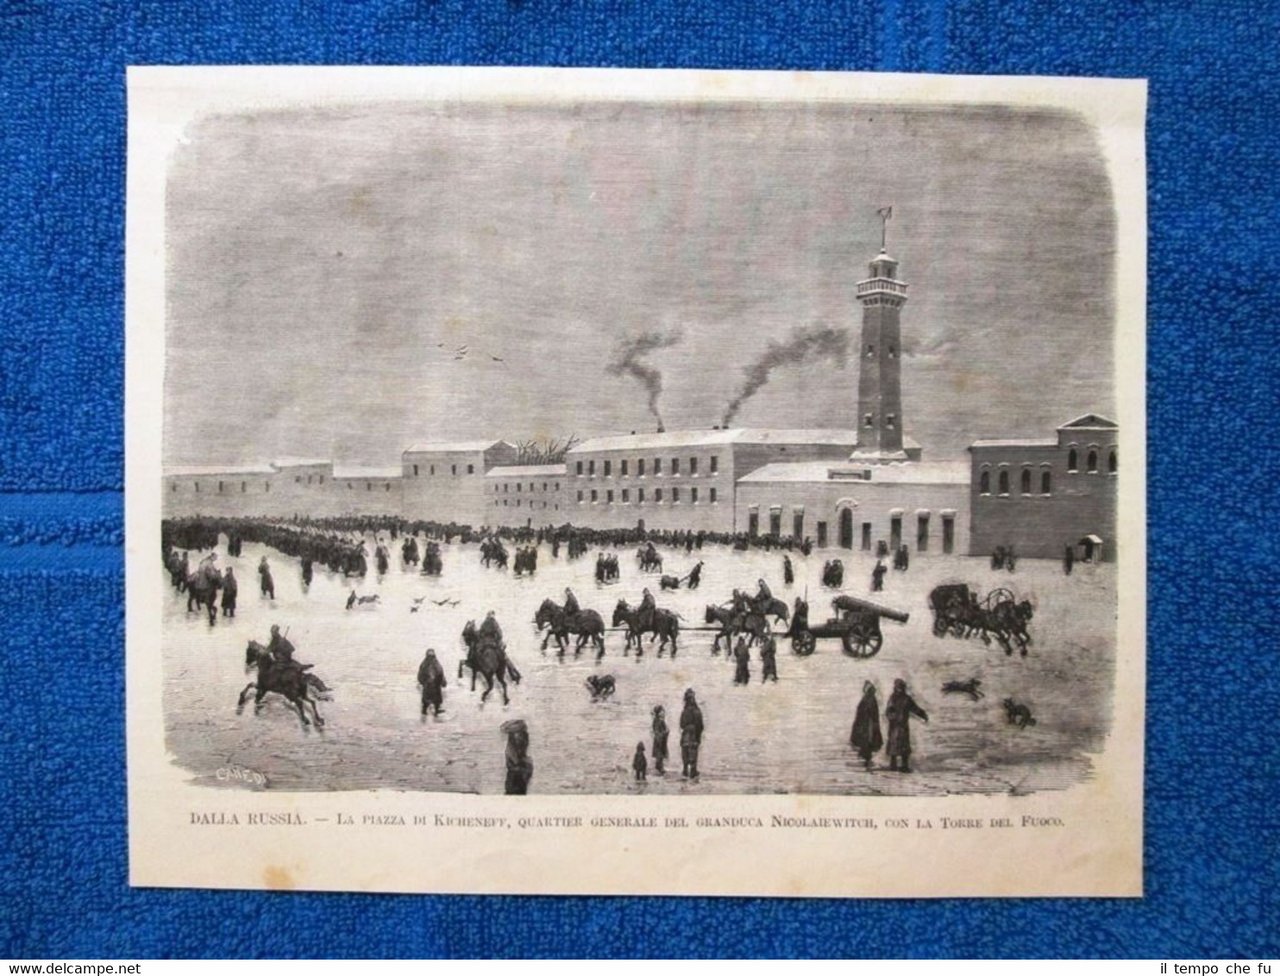 Piazza di Kicheneff, Russia 1877 - Quartier generale del granduca …